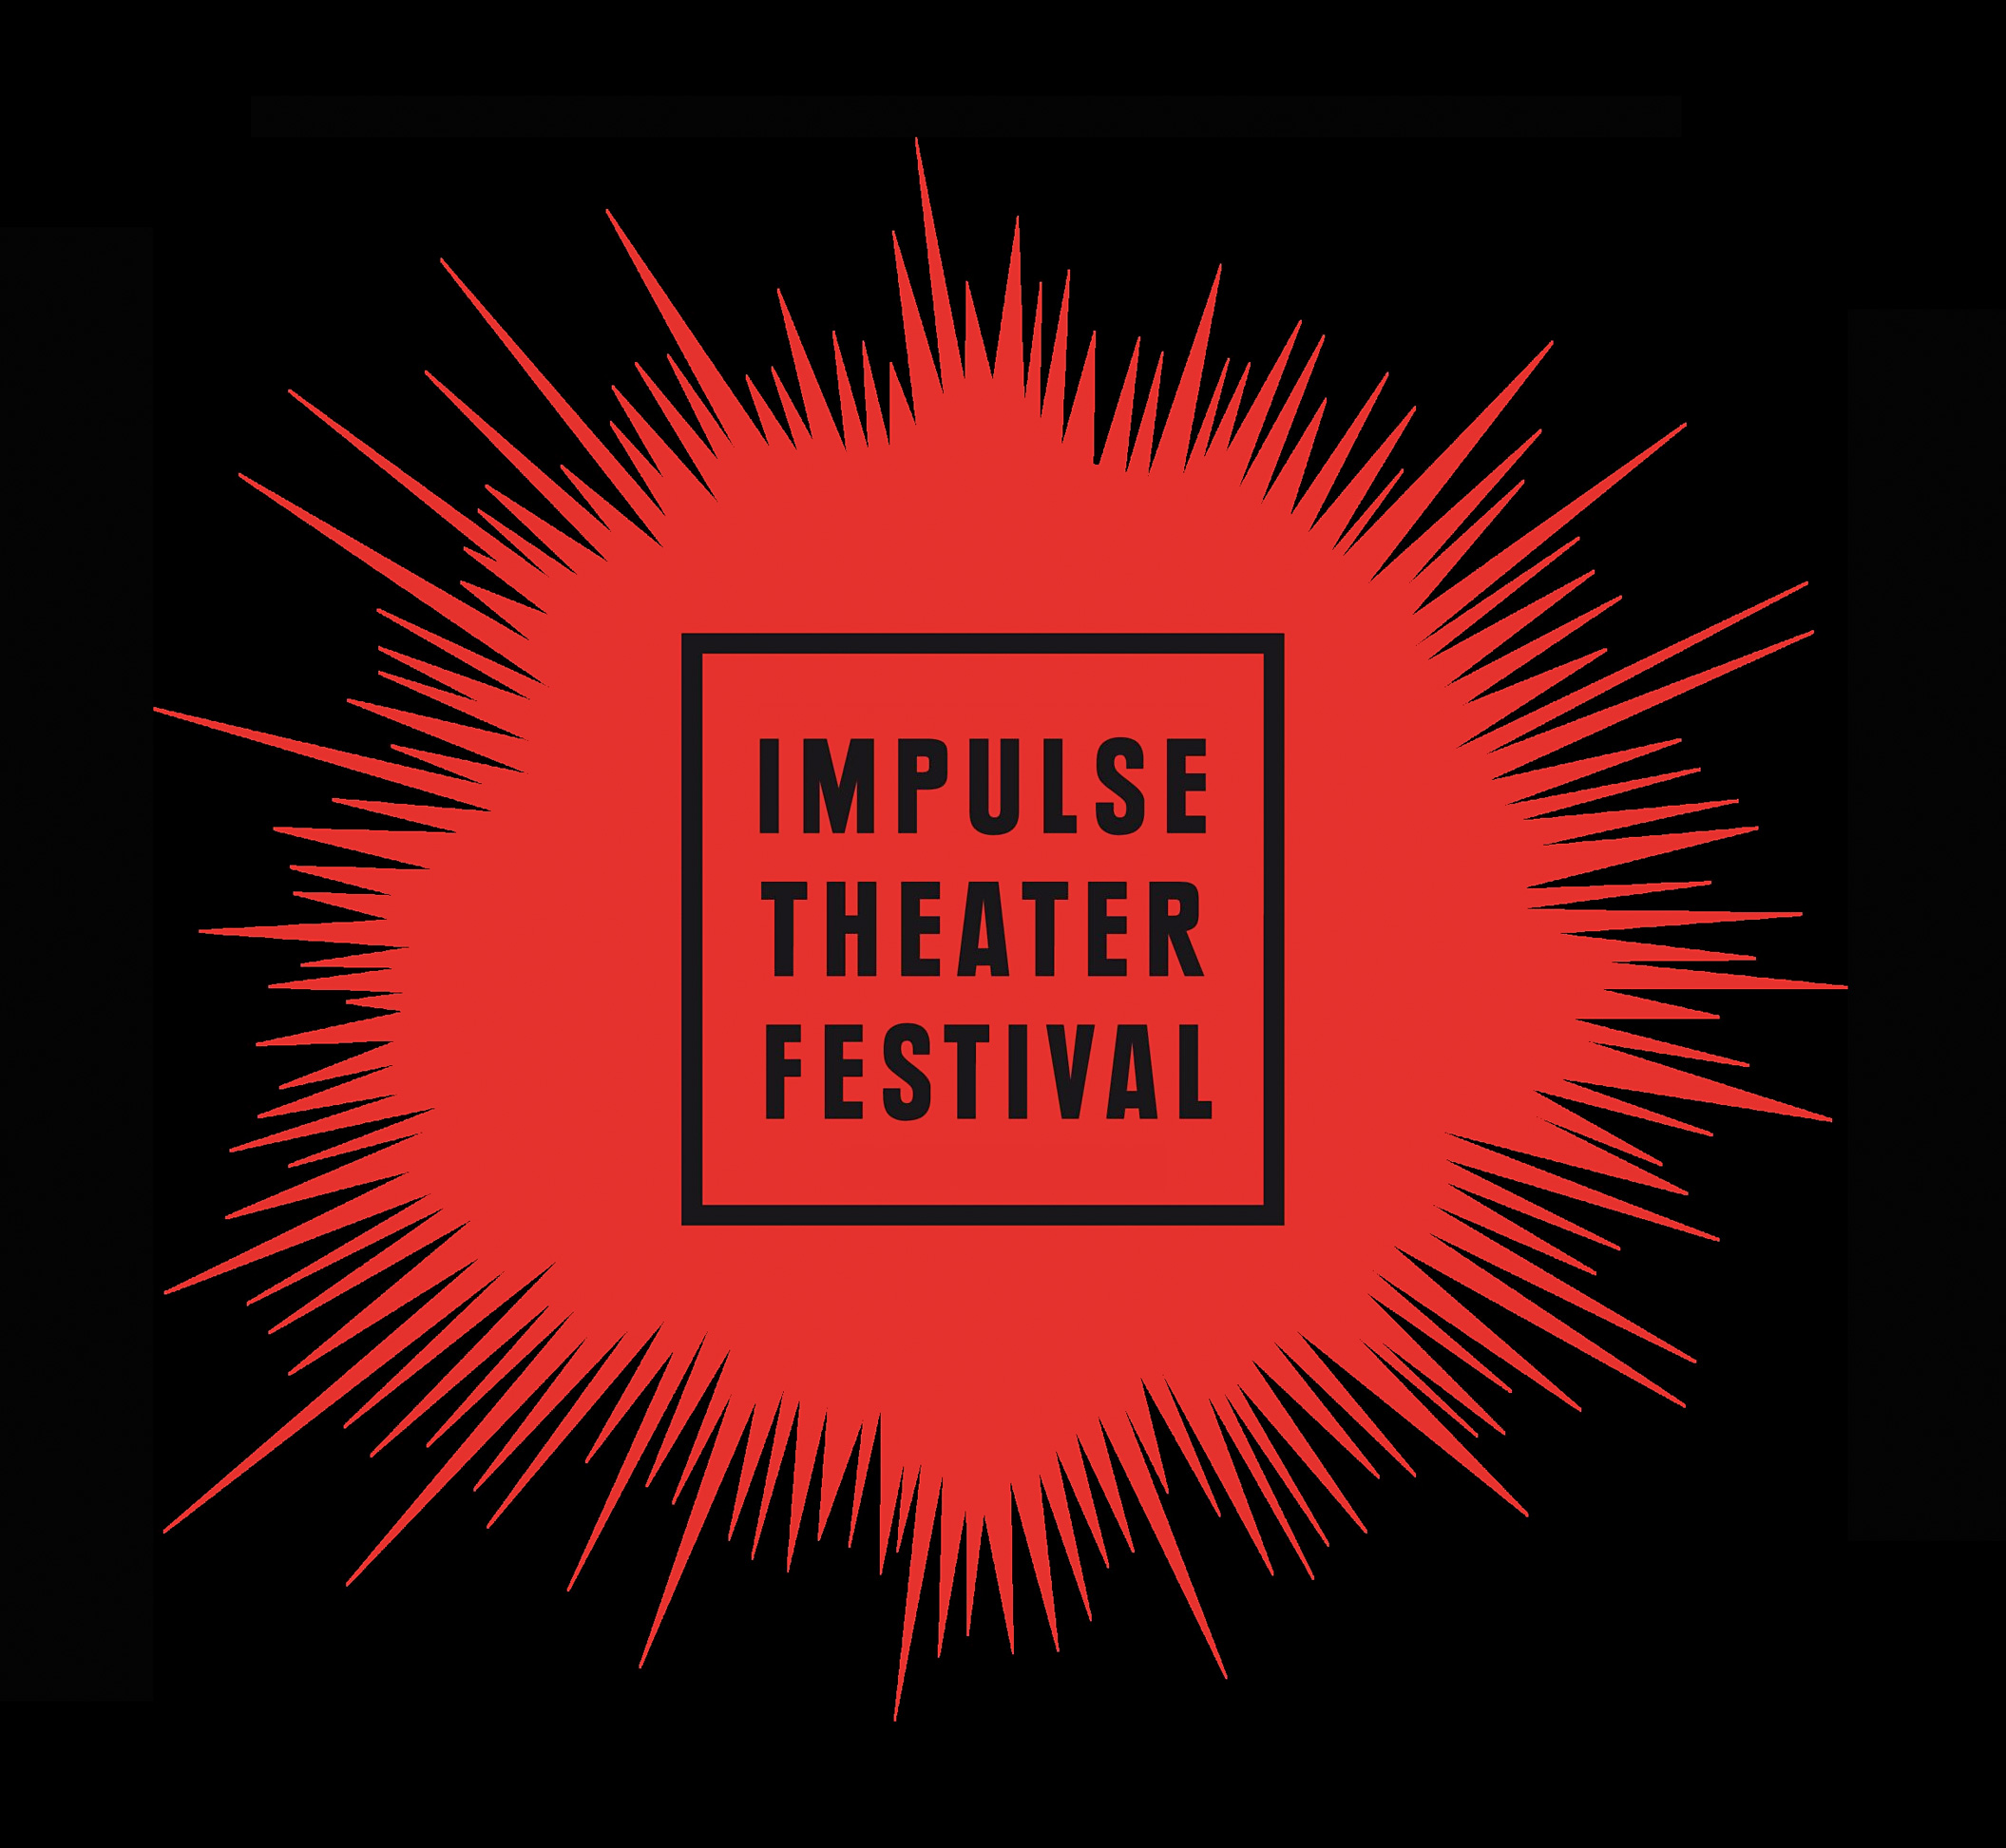 Impulse Theater Festival Florian Malzacher